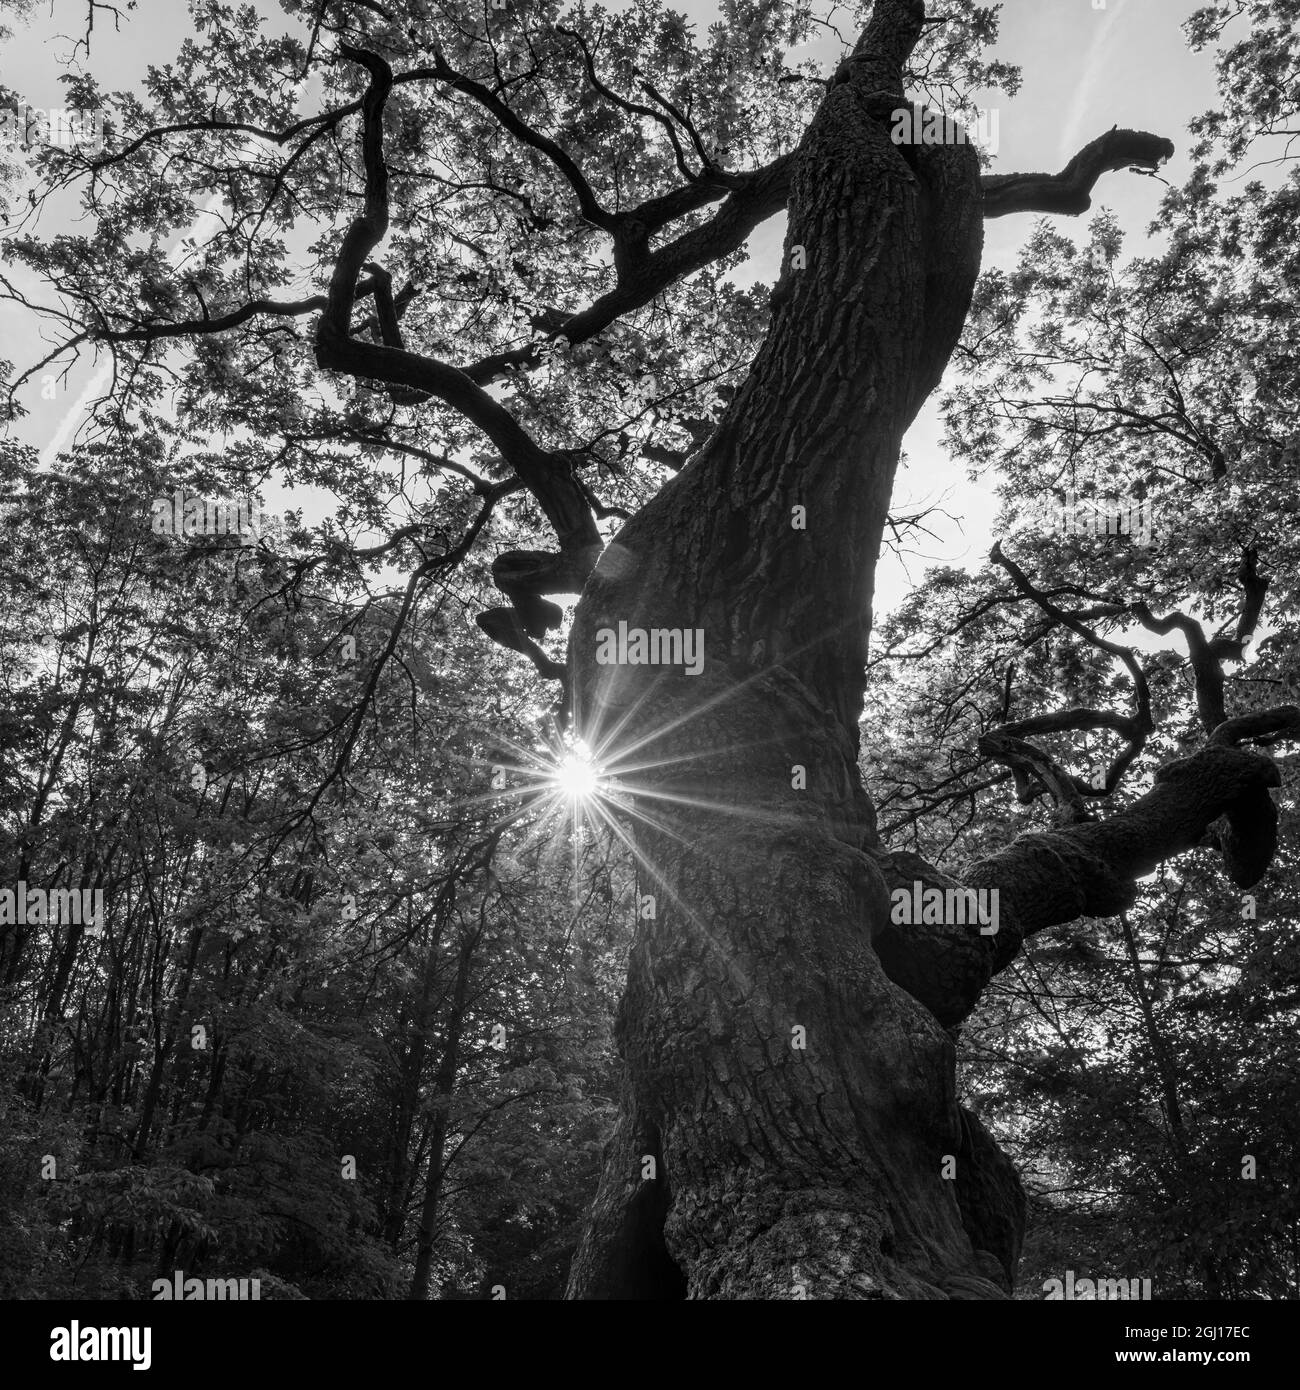 Célèbre Betteleiche (chêne des mendiants), icône de la forêt de Hainich en Thuringe, parc national et site classé au patrimoine mondial de l'UNESCO. Beech. Primitive Banque D'Images